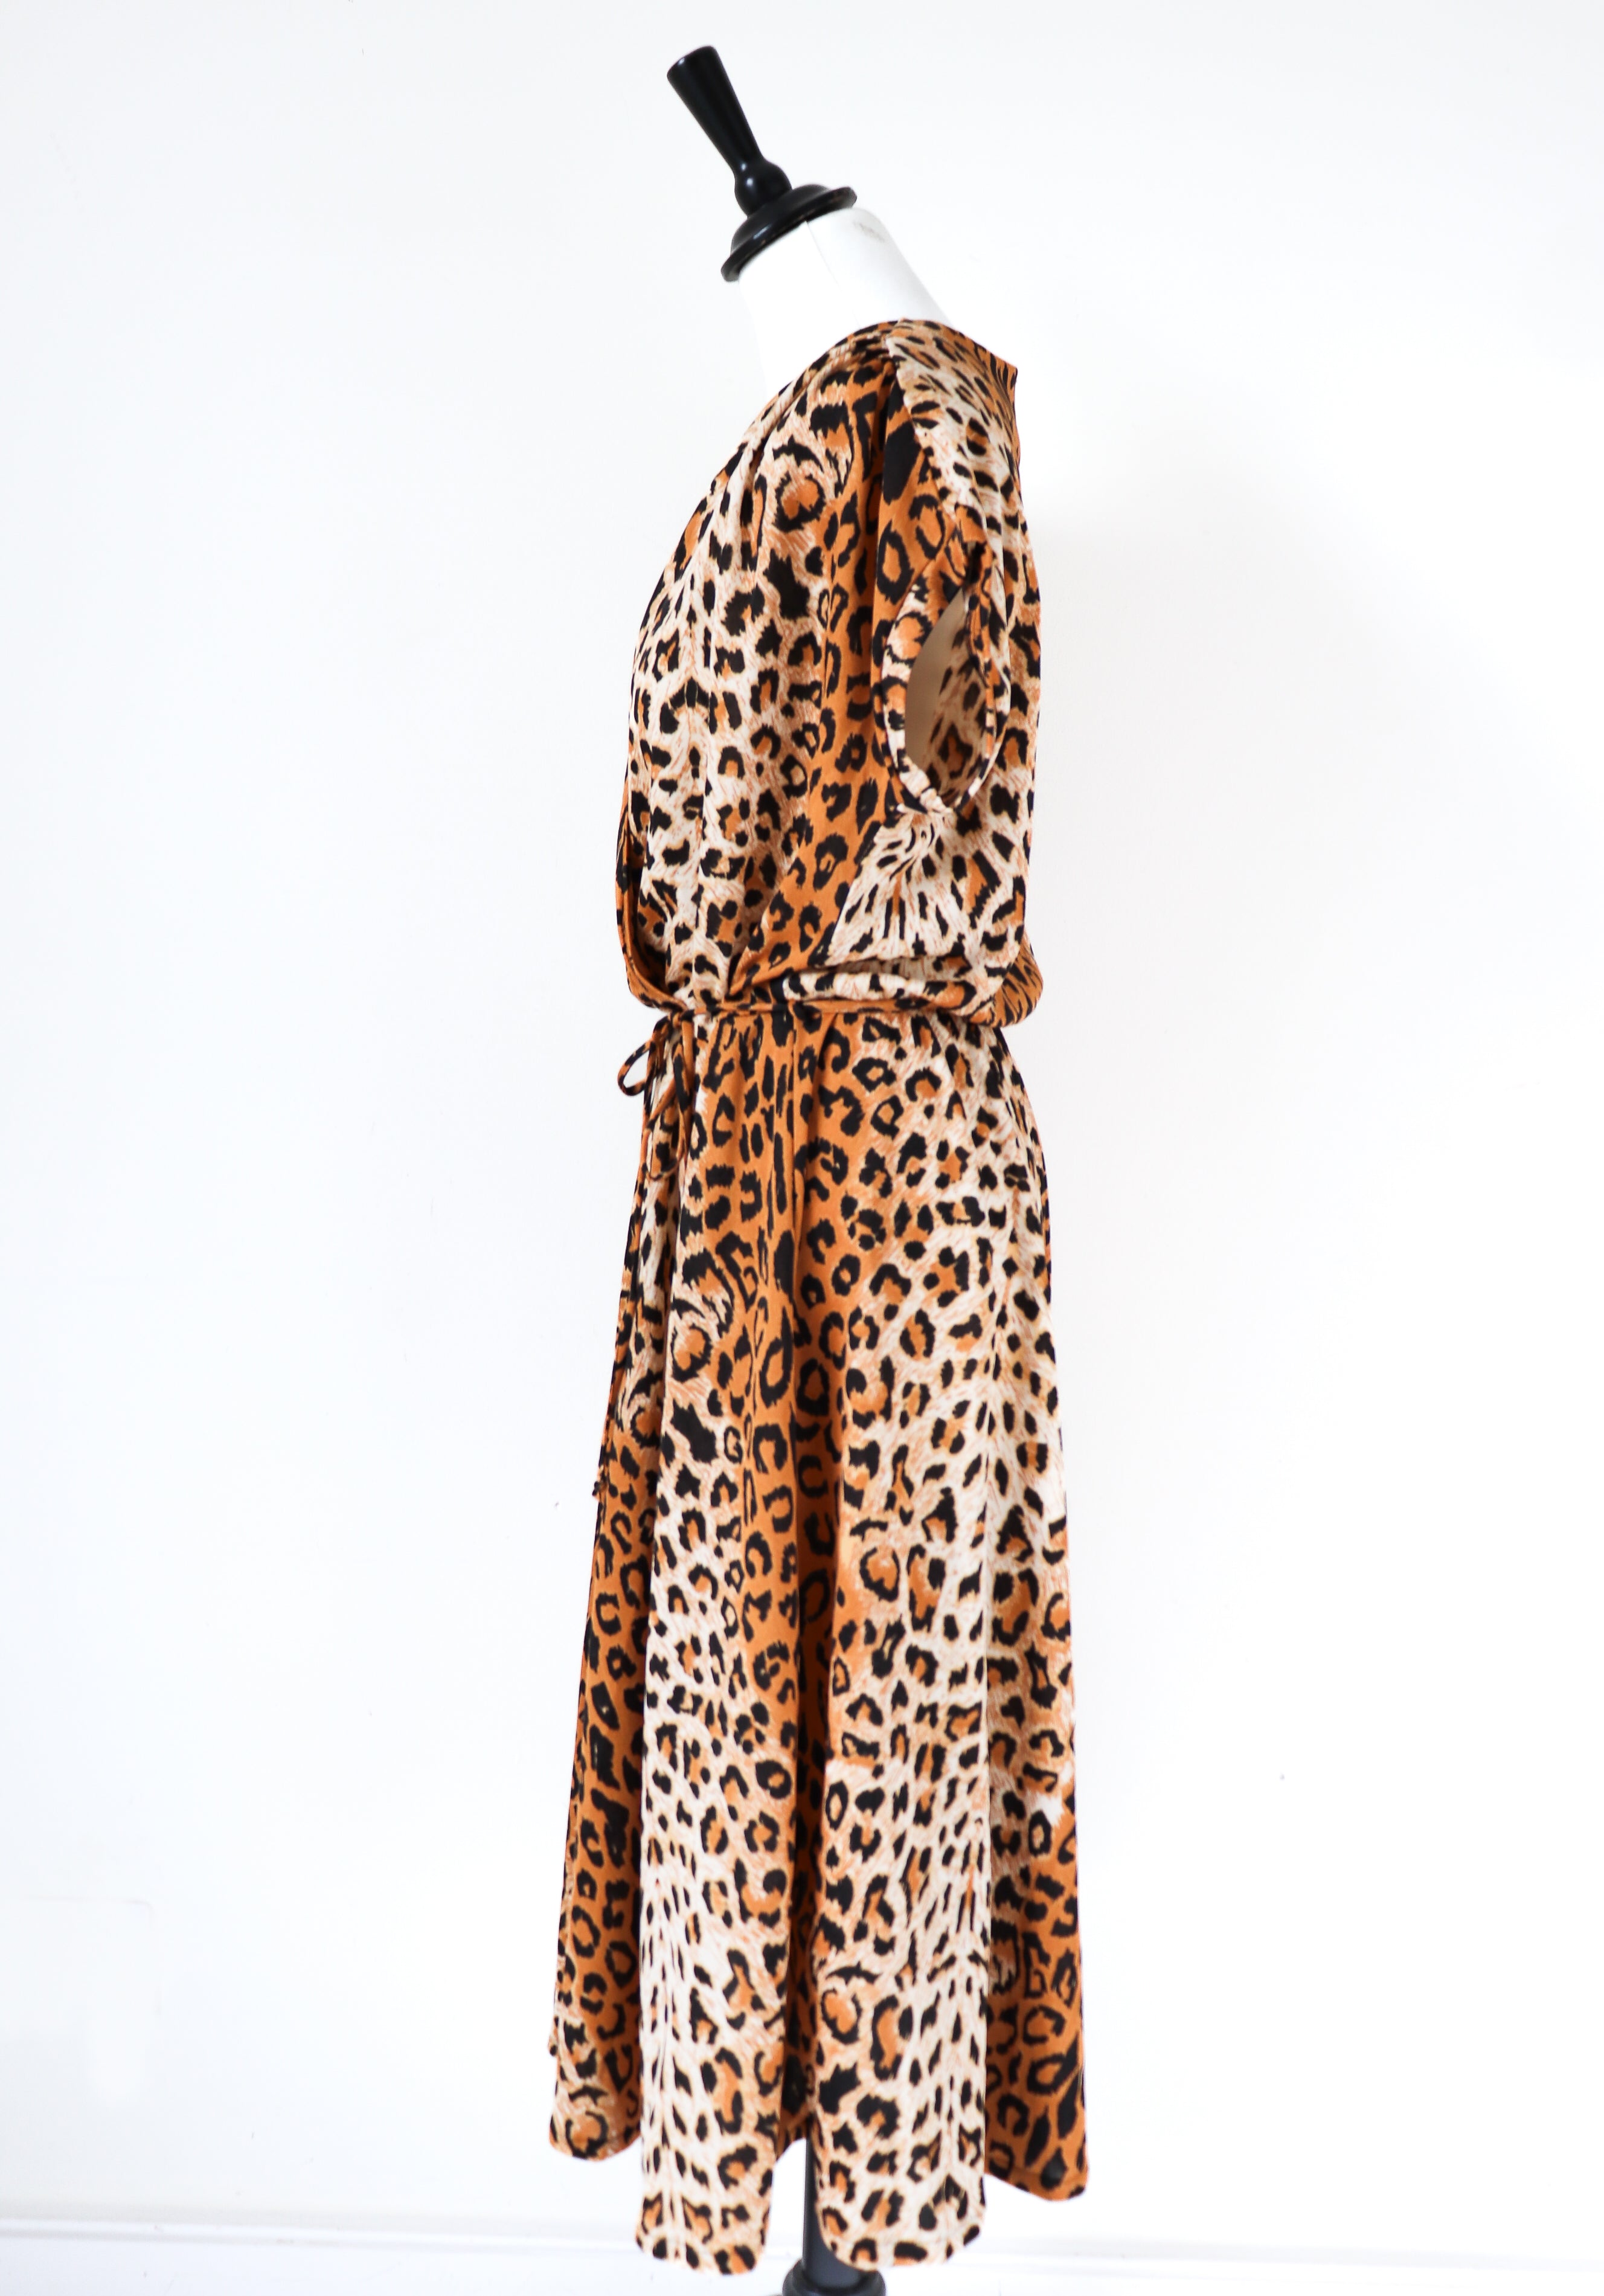 Leopard Print Vintage Dress - 1980s Allander House Of Fraser - Fit L / UK 14